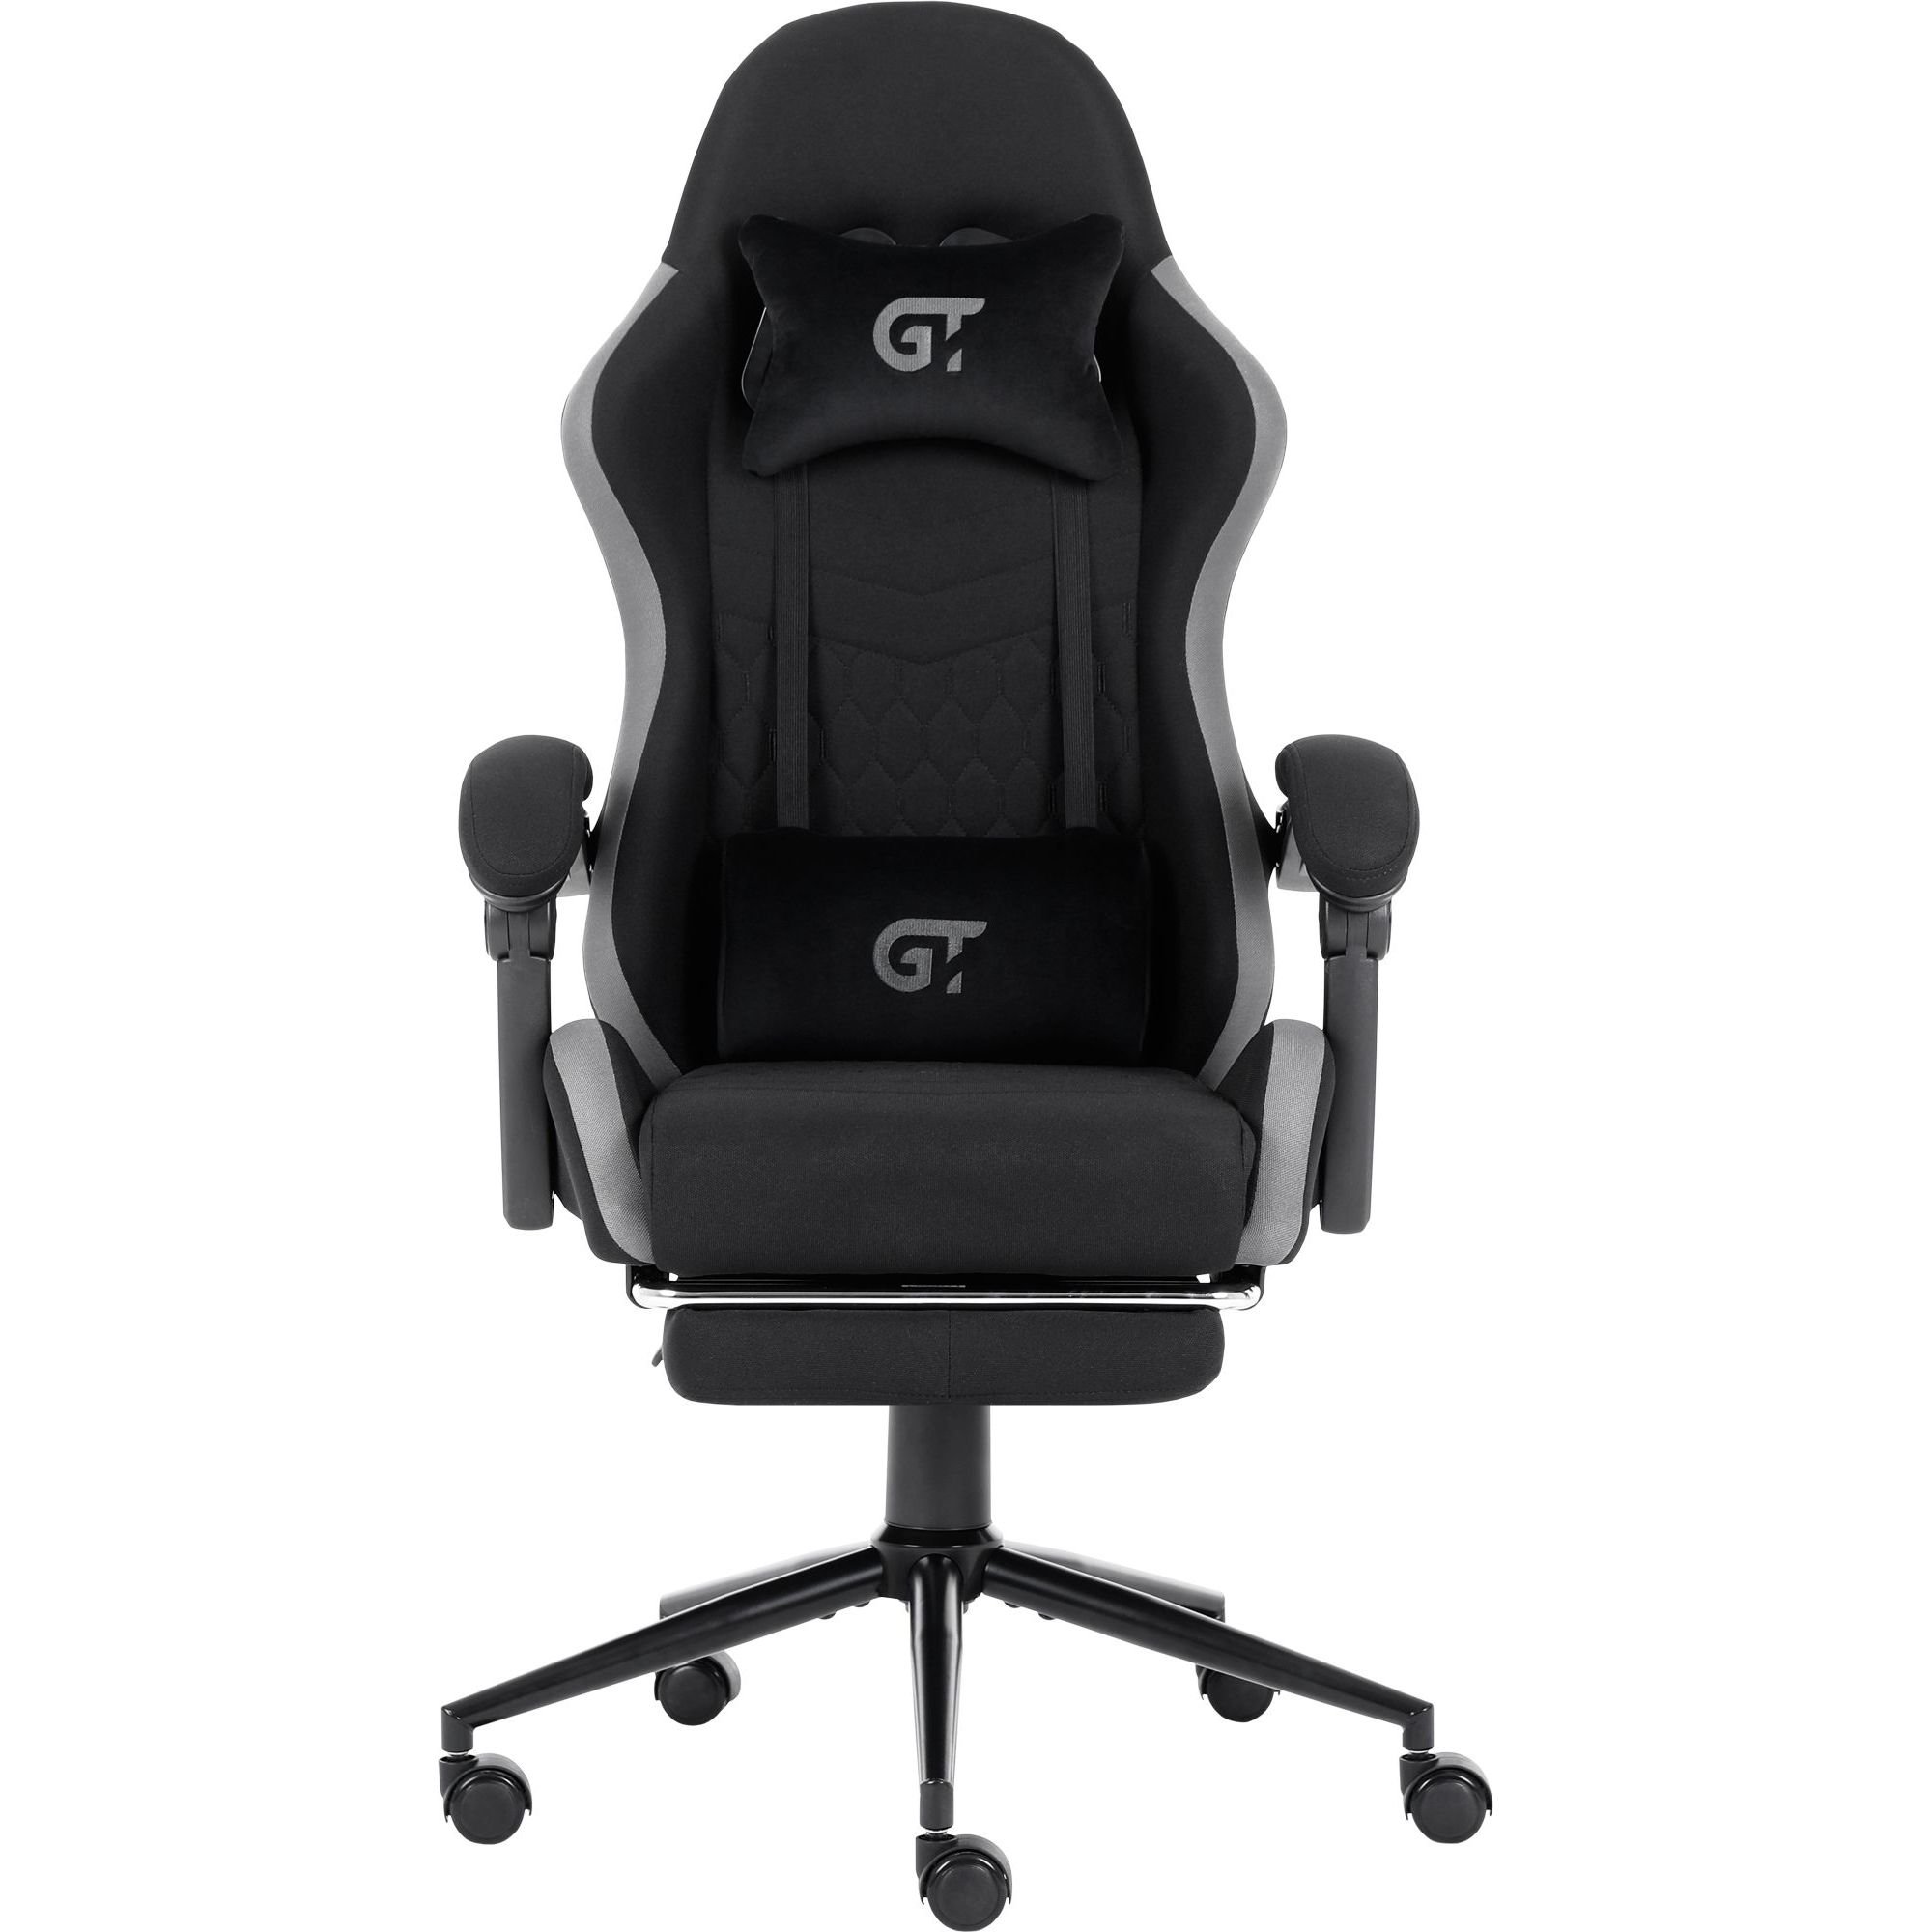 Геймерское кресло GT Racer черное с серым (X-2324 Fabric Black/Gray) - фото 1